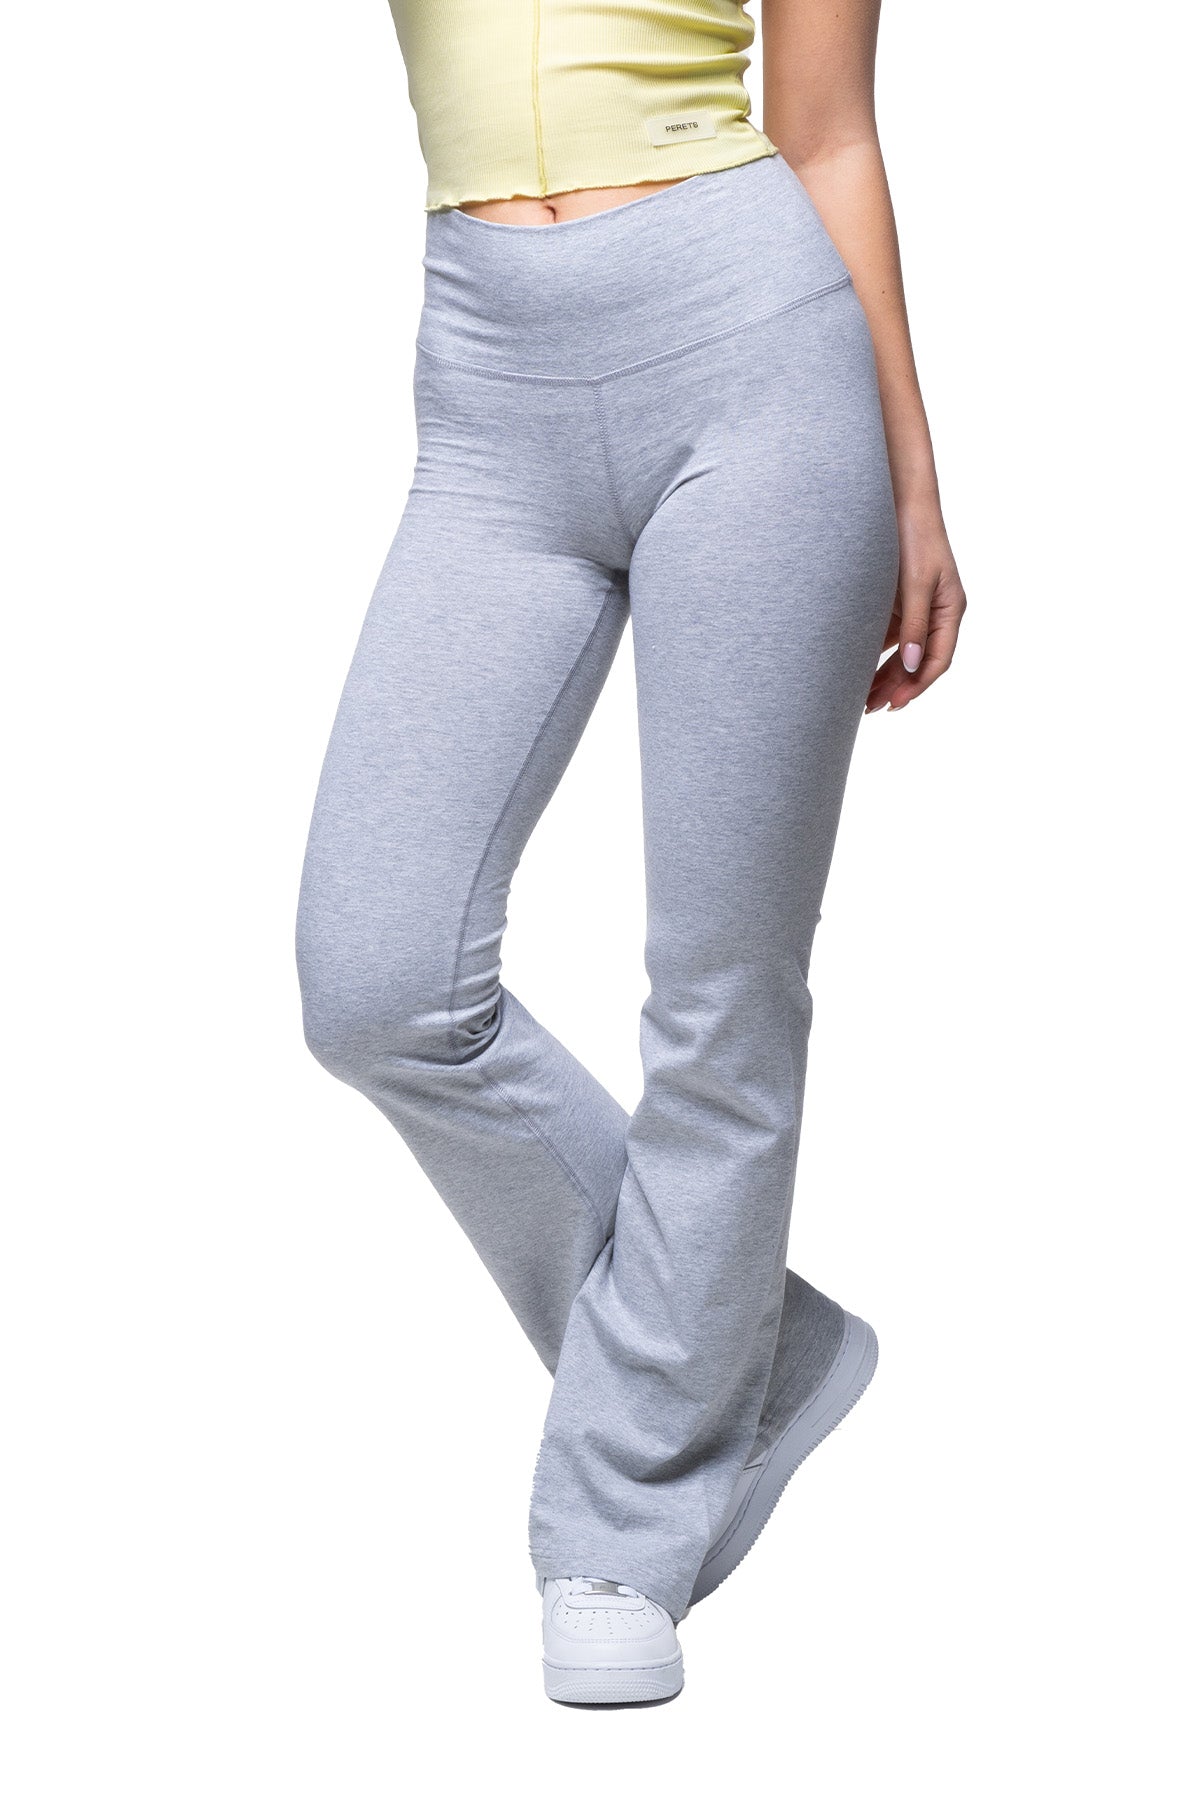 Women's Cotton Spandex Yoga Pant, 59% OFF